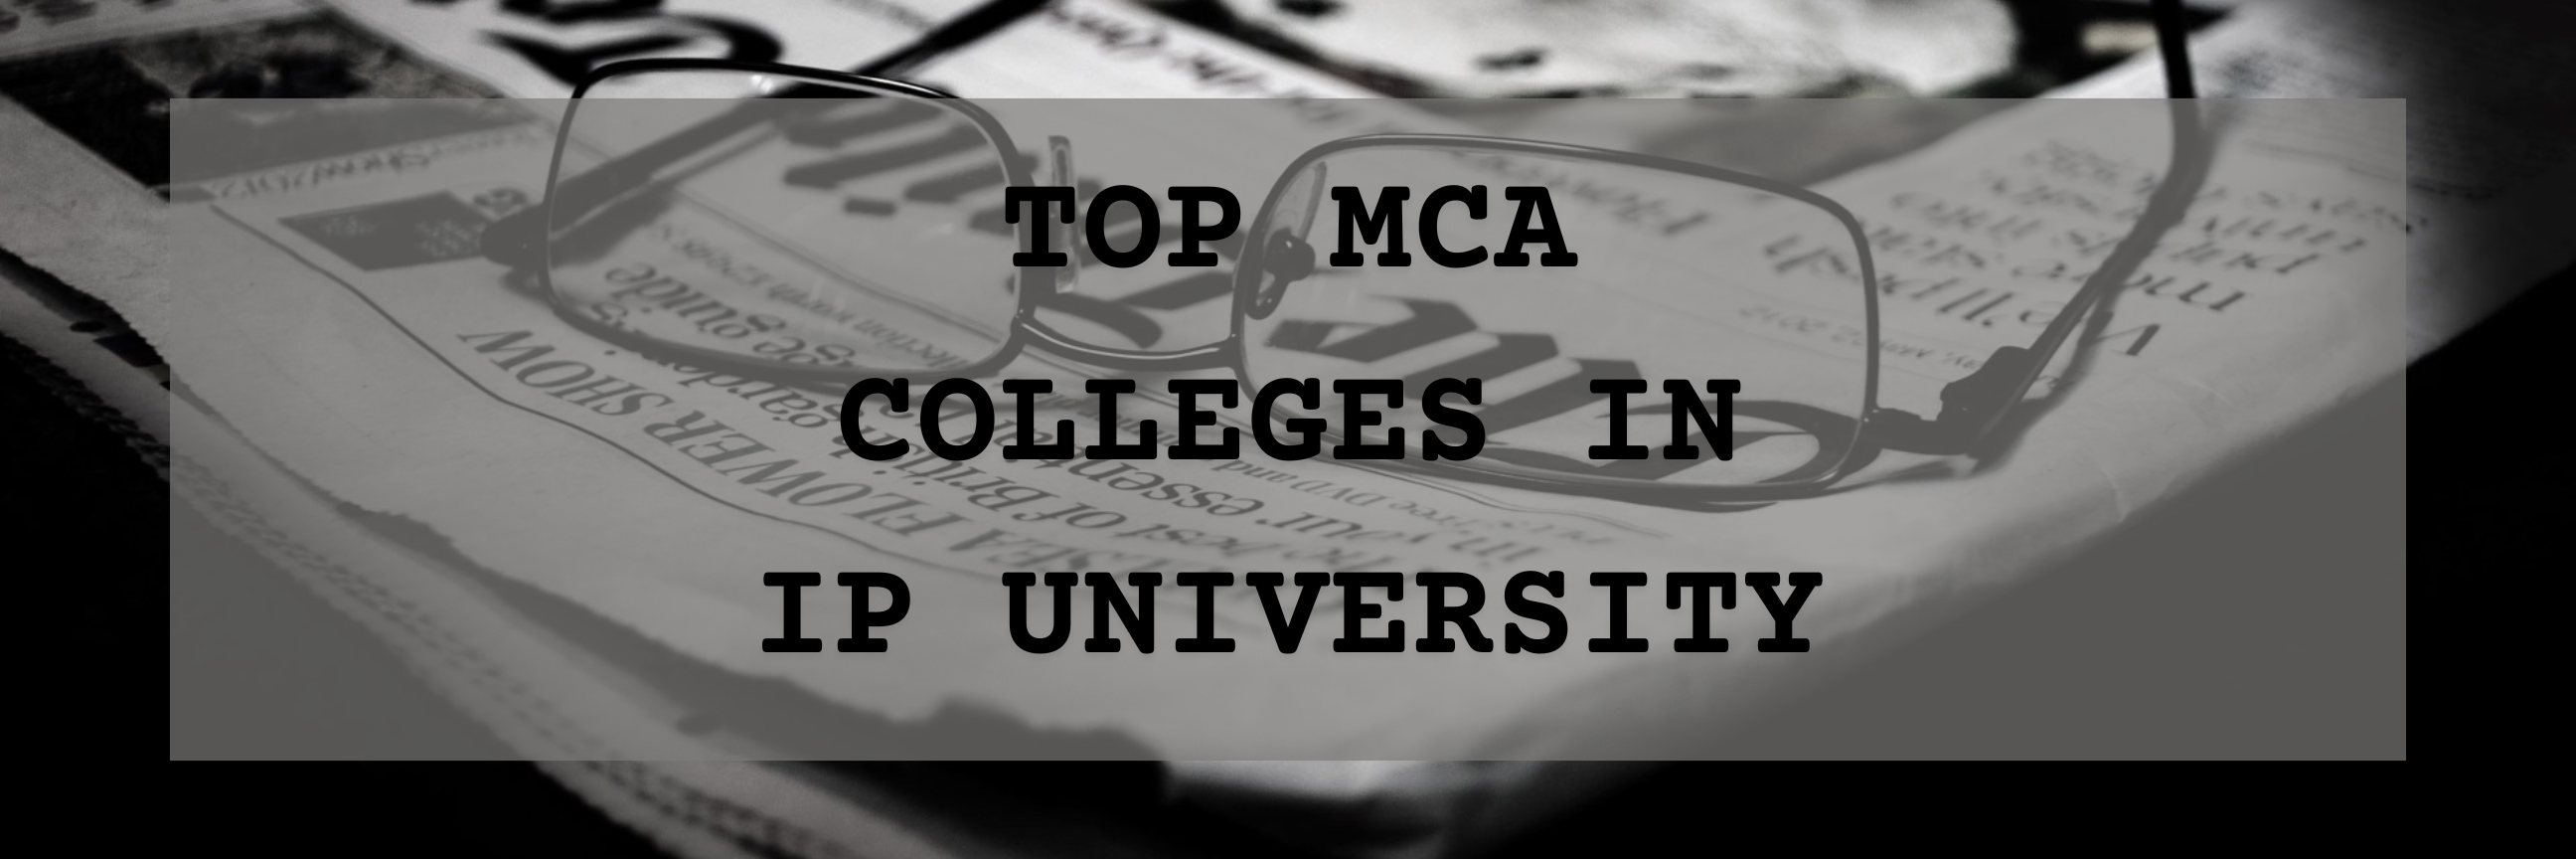 Top IPU MCA colleges